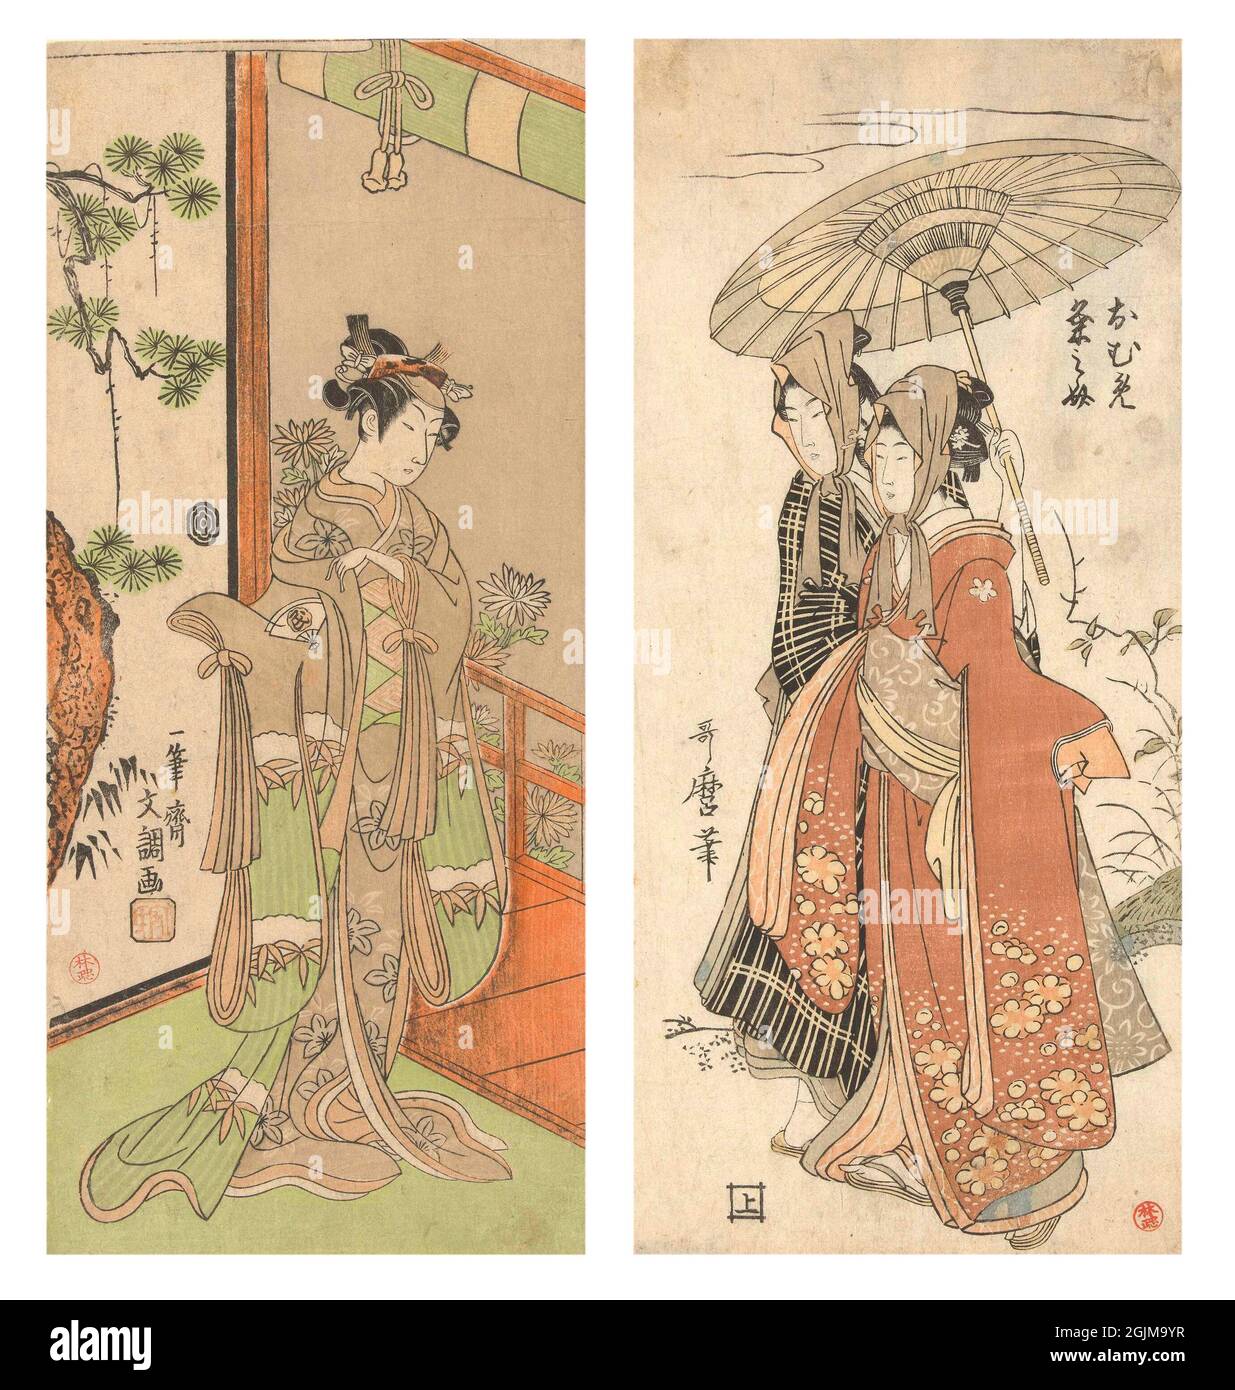 Agencement optimisé et amélioré unique de deux illustrations japonaises anciennes. De gauche à droite: 1.actor Onoe Tamizo jouant un rôle féminin dans le kimono avec un motif de bambou enneigé, debout devant la porte coulissante avec la peinture de l'arbre de pin, en regardant sur la véranda, en fleurs chrysanthèmes derrière (1768 - 1772). 2.les amoureux de la fuite Oume et Kumenosuke, tous deux portant des foulards, sous un parapluie / parasol. (1800-1805) Banque D'Images